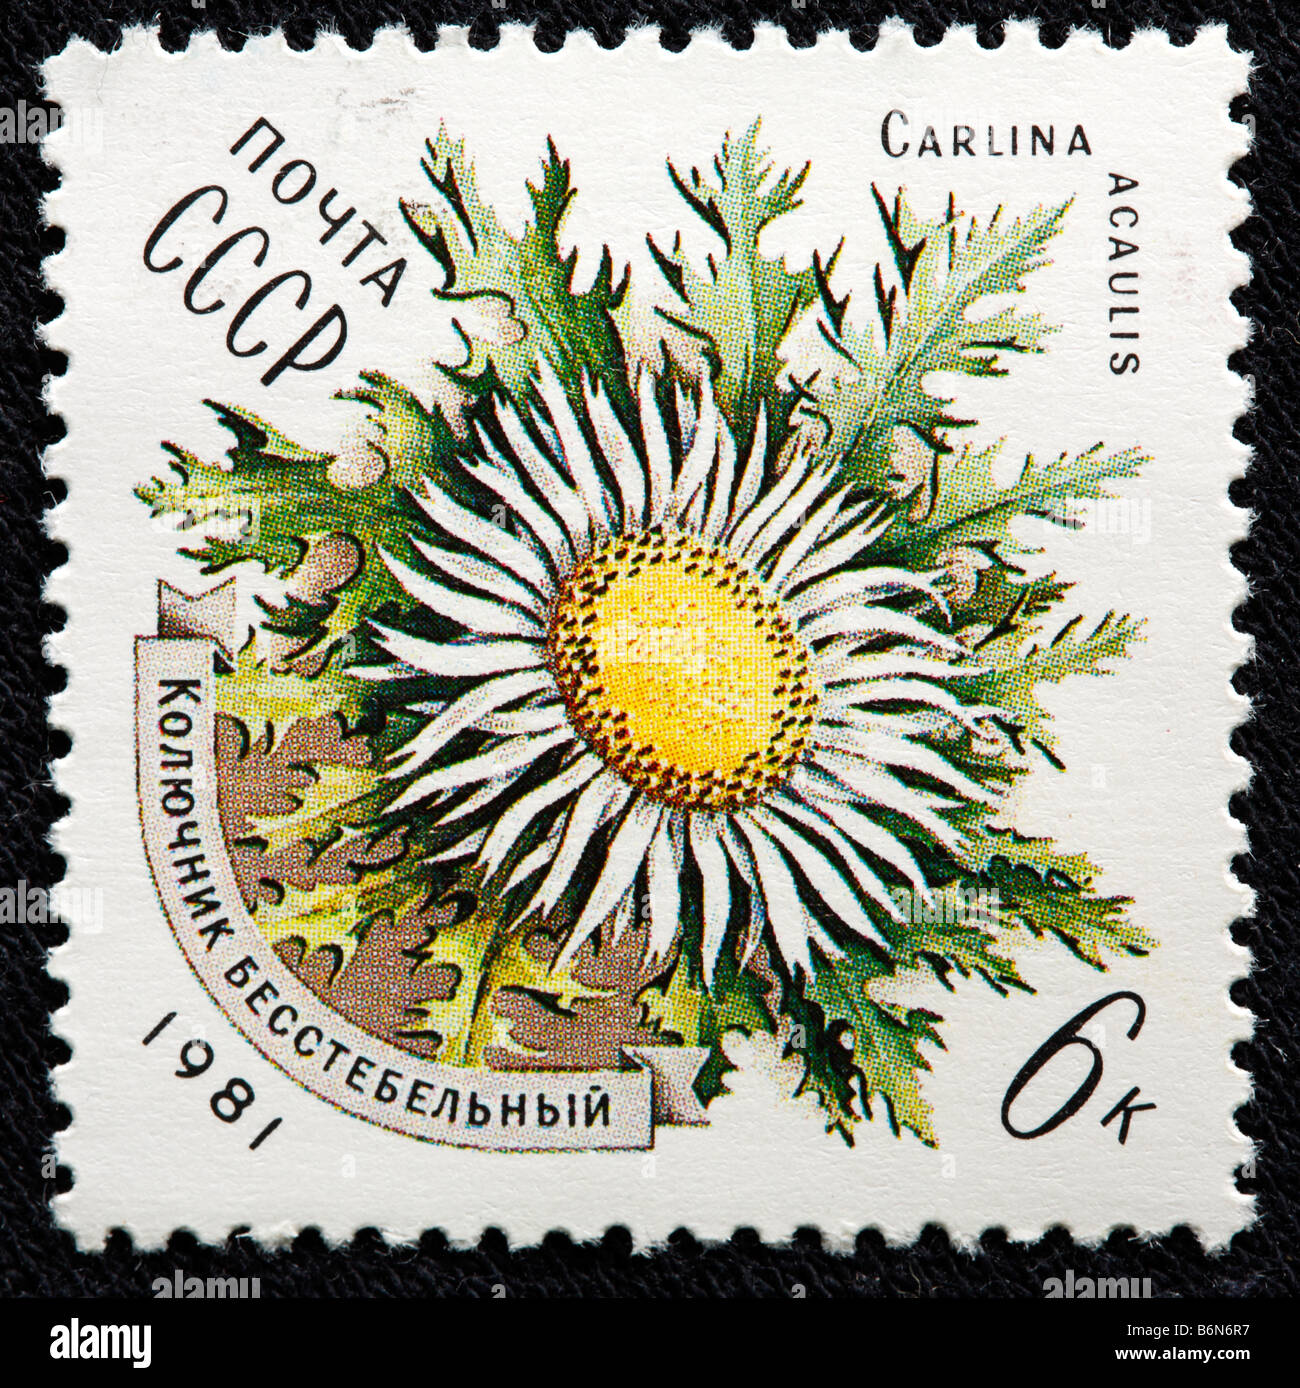 Carlina Acaulis (stammlose Carline Thistle Zwerg, Carline Thistle, Silberdistel), Blume, Briefmarke, UdSSR, Russland 1981 Stockfoto